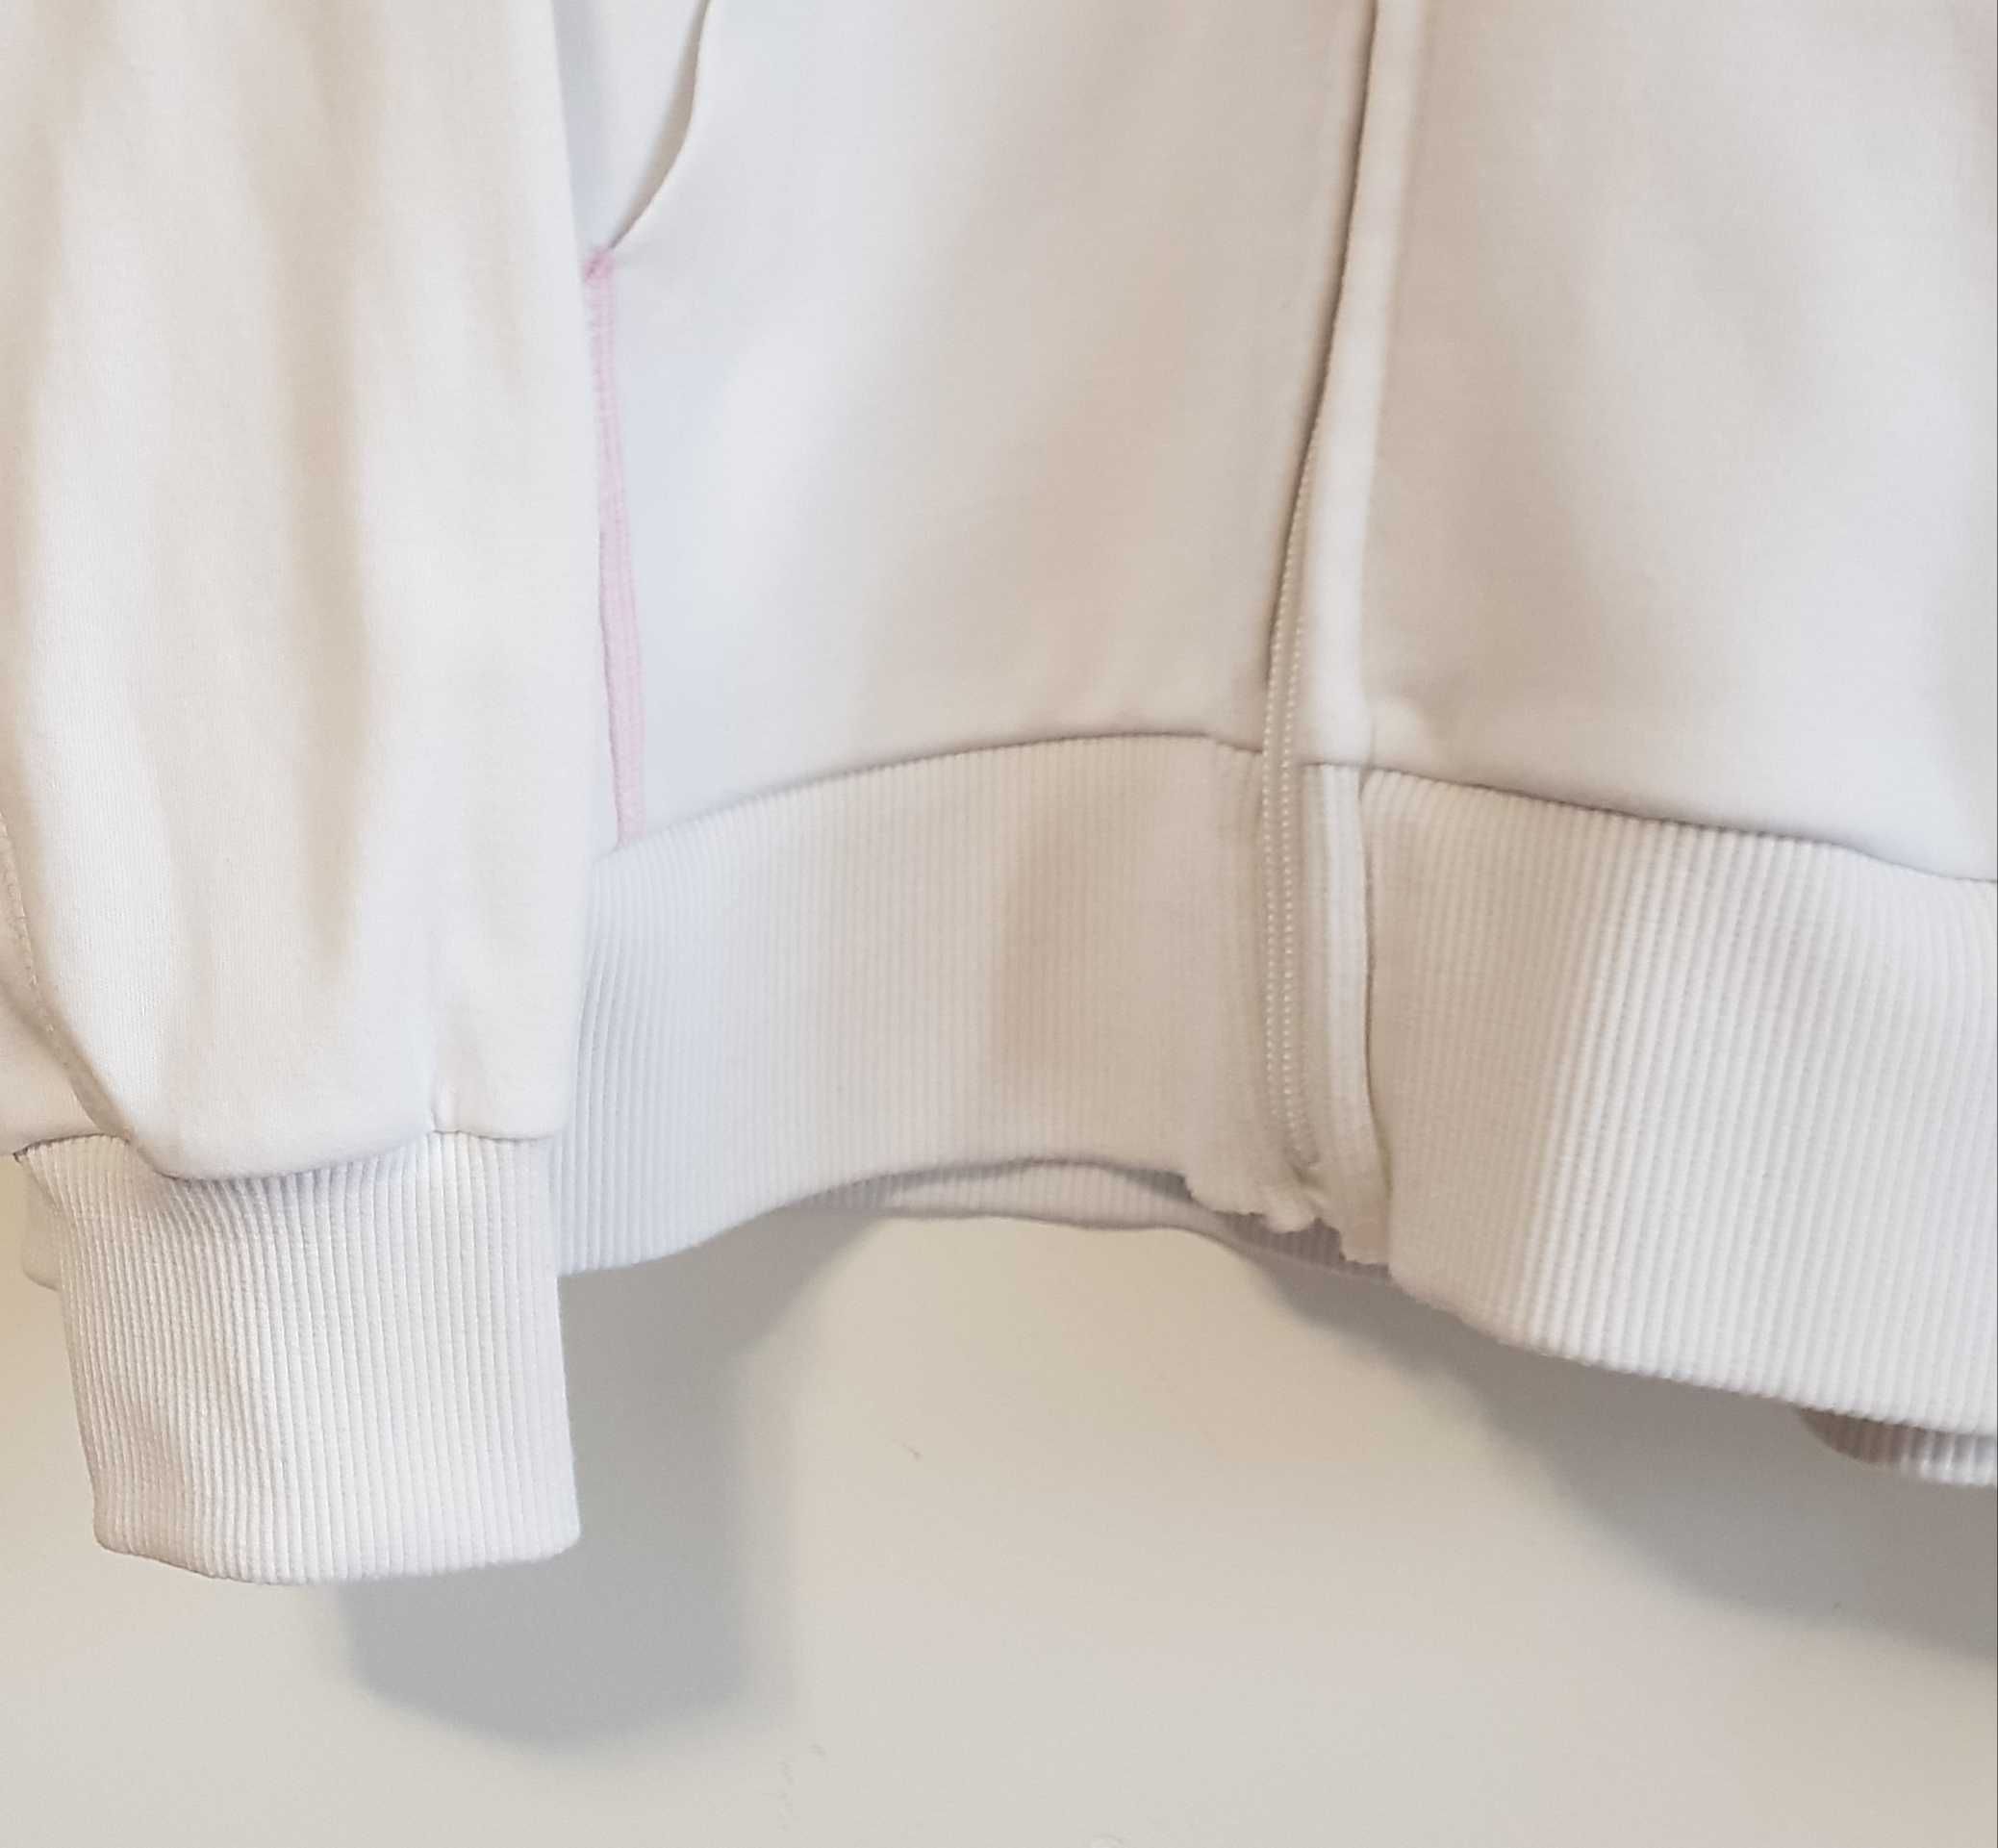 Damska biało-różowa bluza z kapturem Lonsdale London rozm. S/M/L